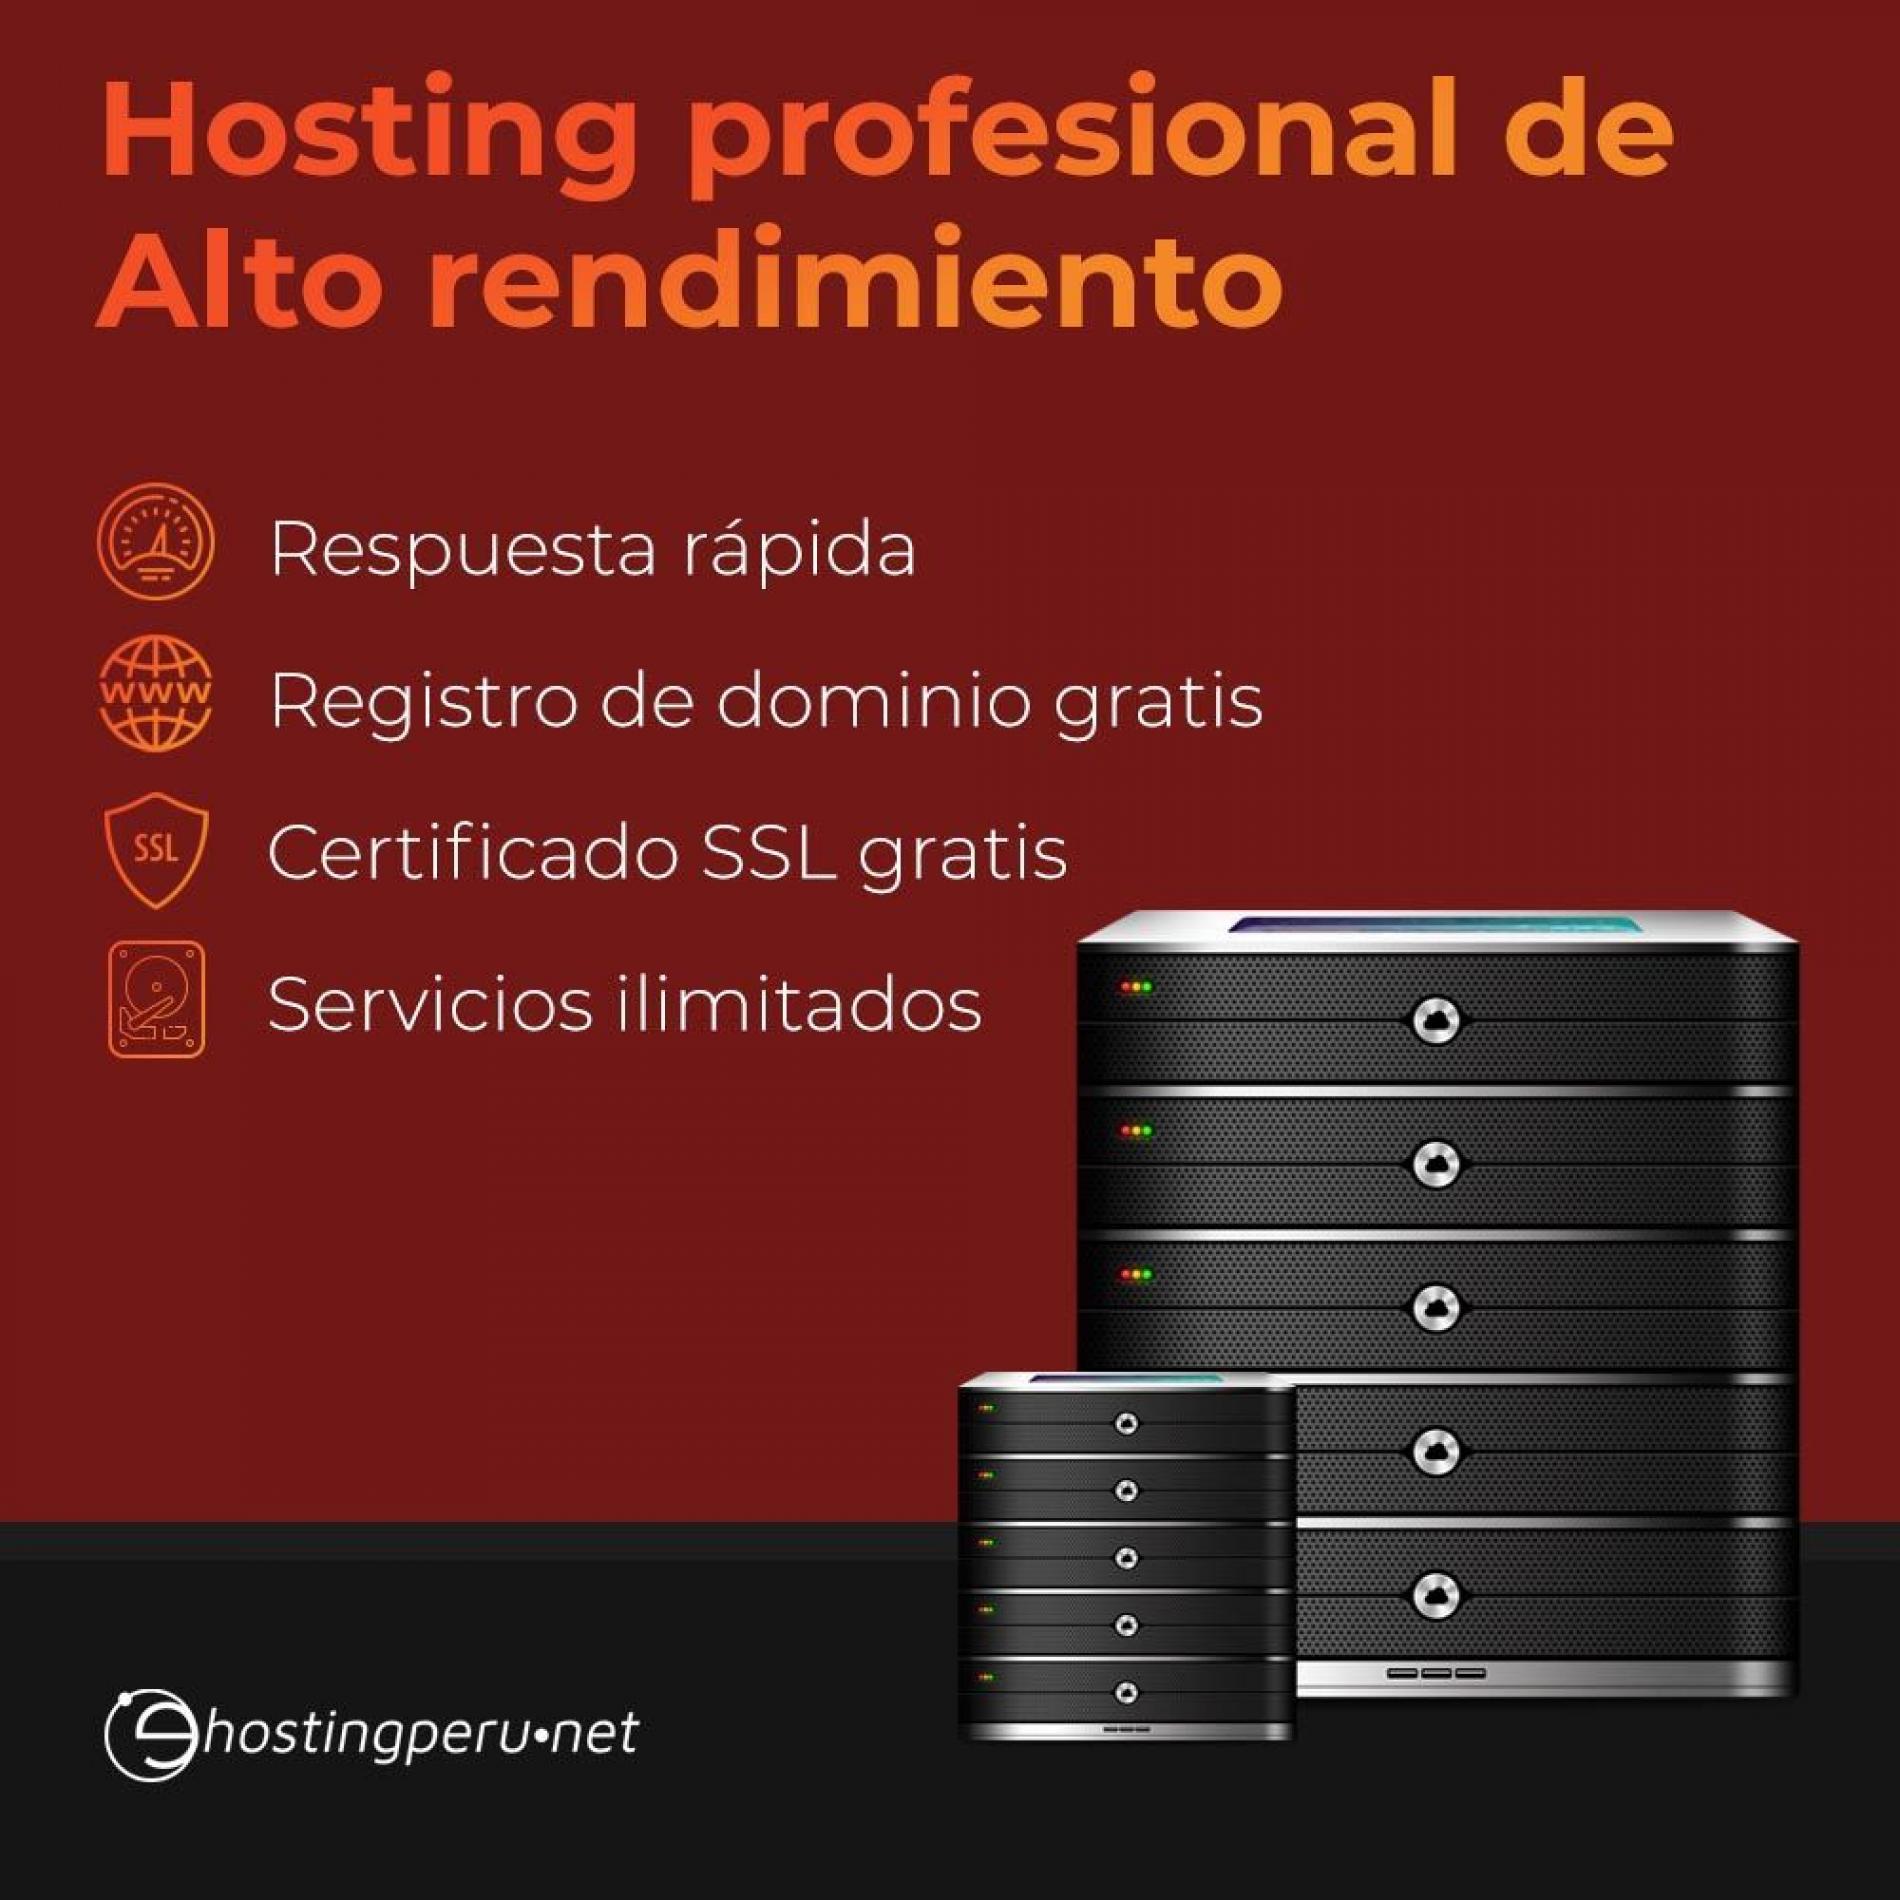 Venta de hosting profesional y dominios en Perú